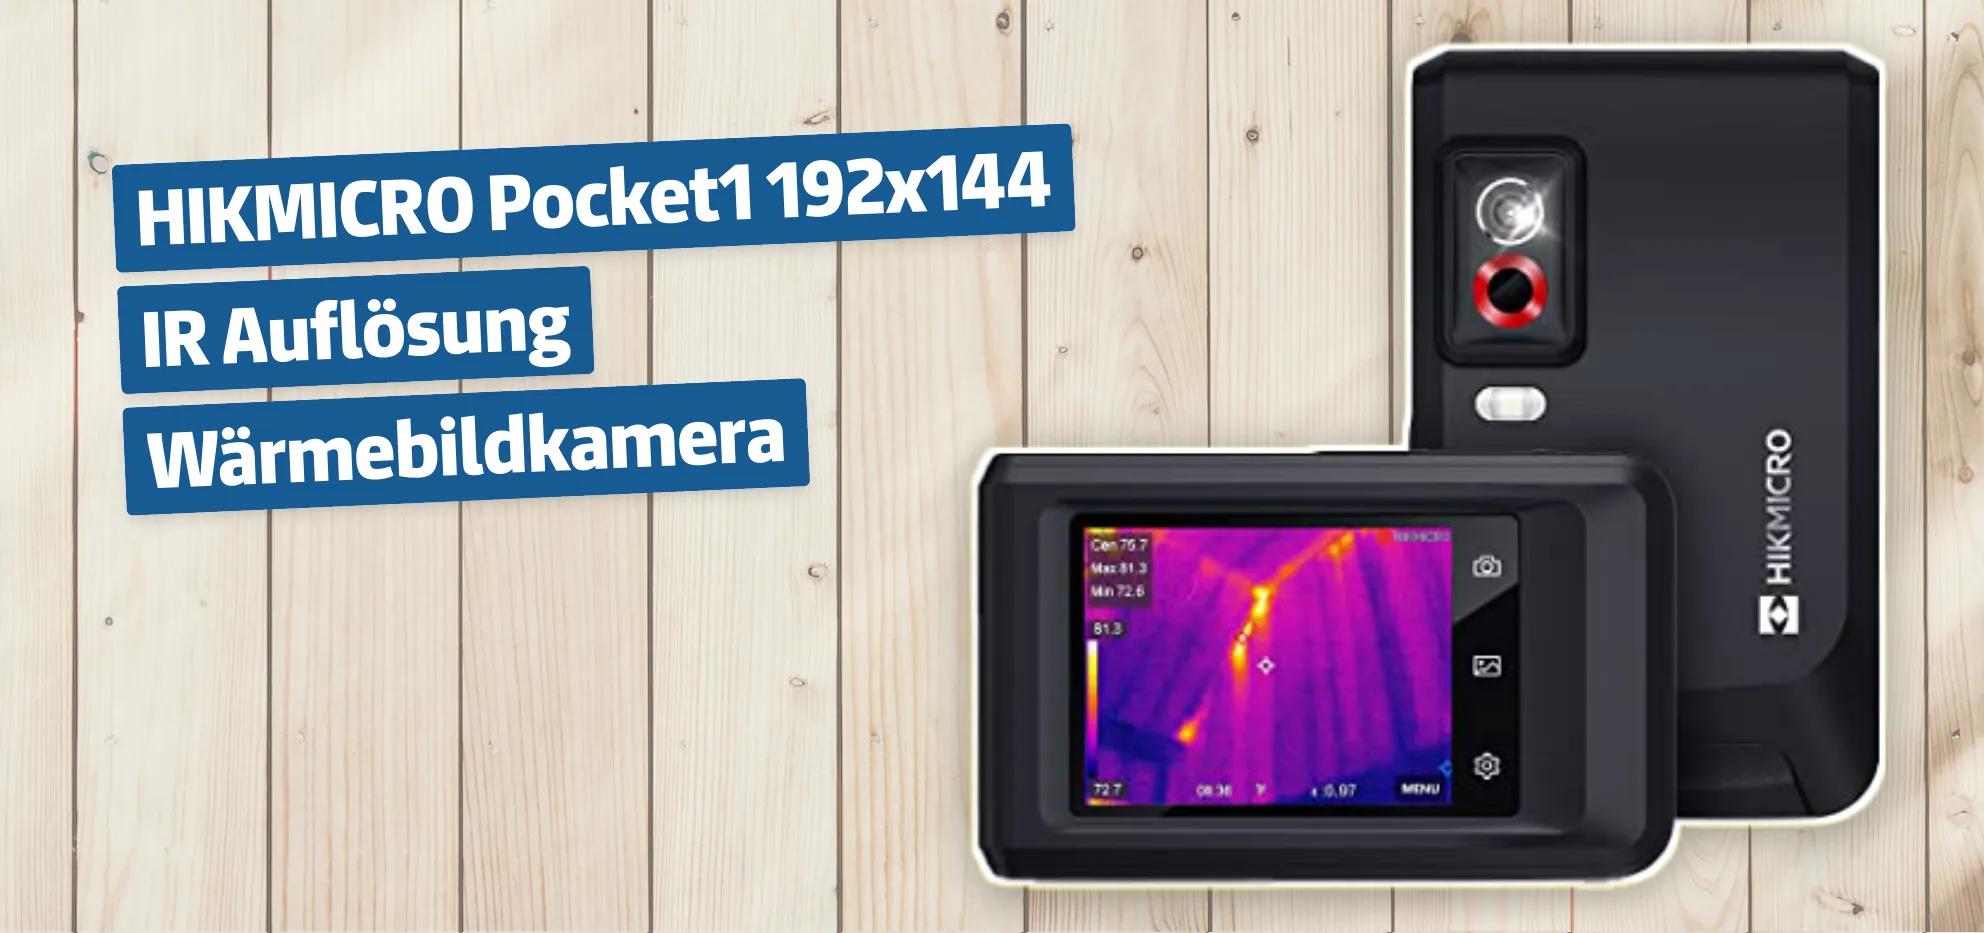 HIKMICRO Pocket1 192x144 IR Auflösung Wärmebildkamera